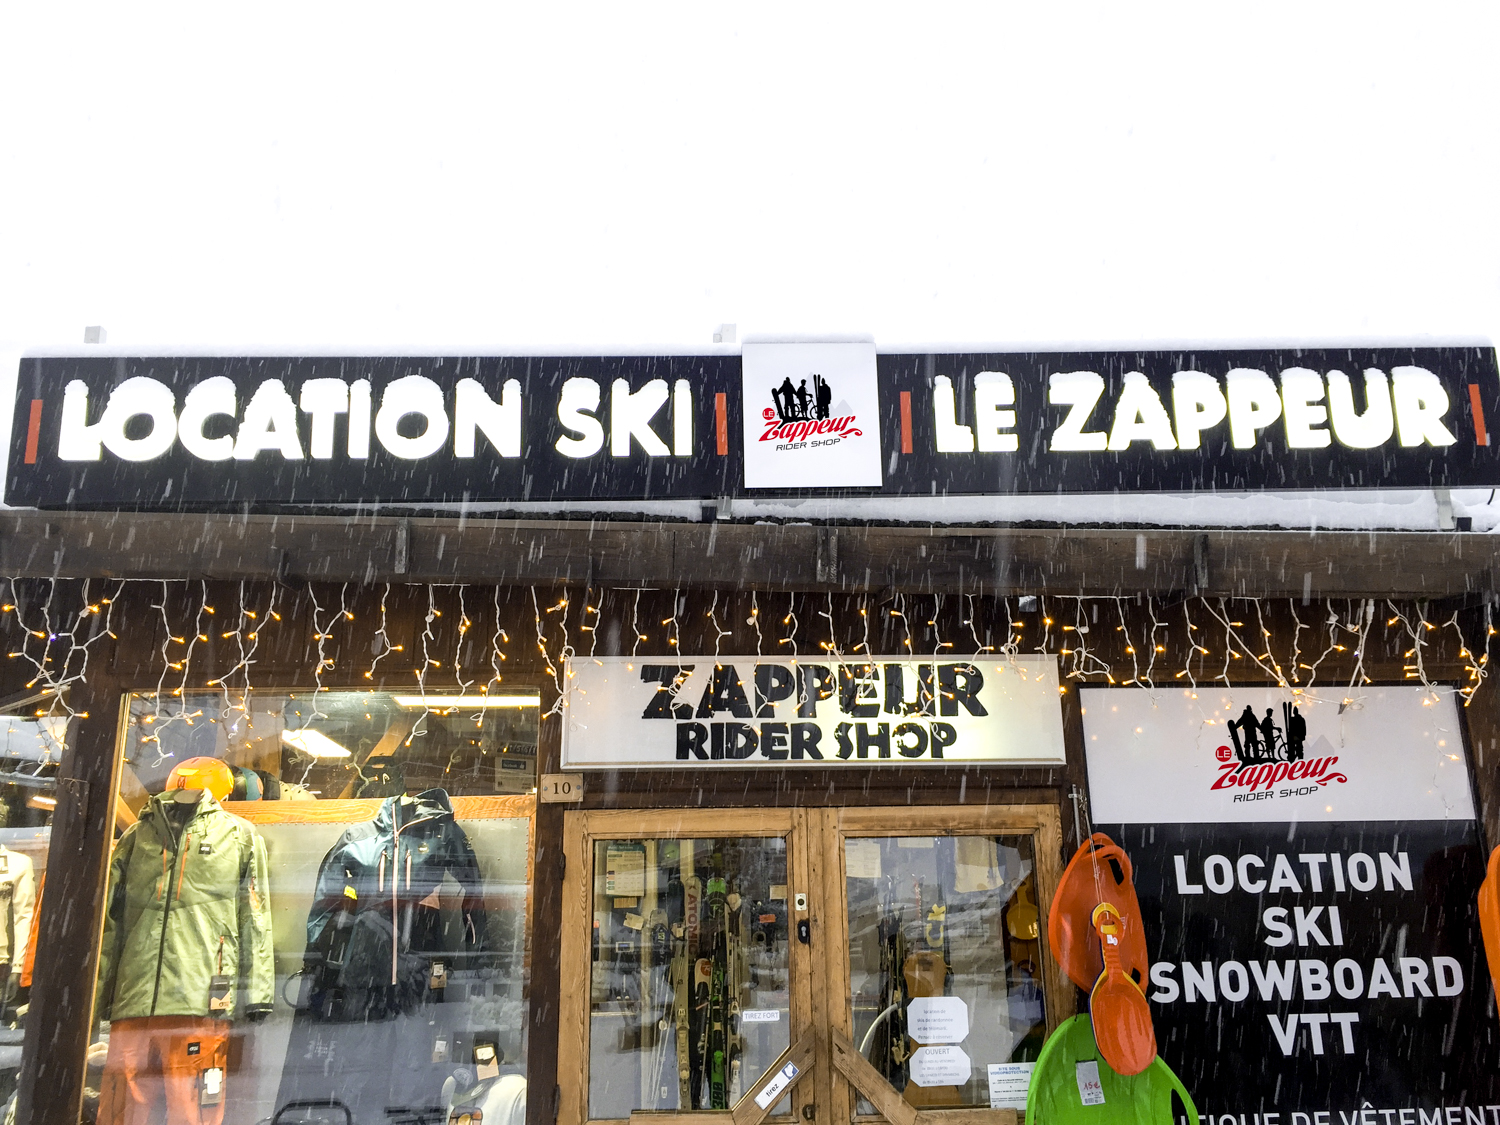 Le Zappeur Rider Shop exterieur2.jpg